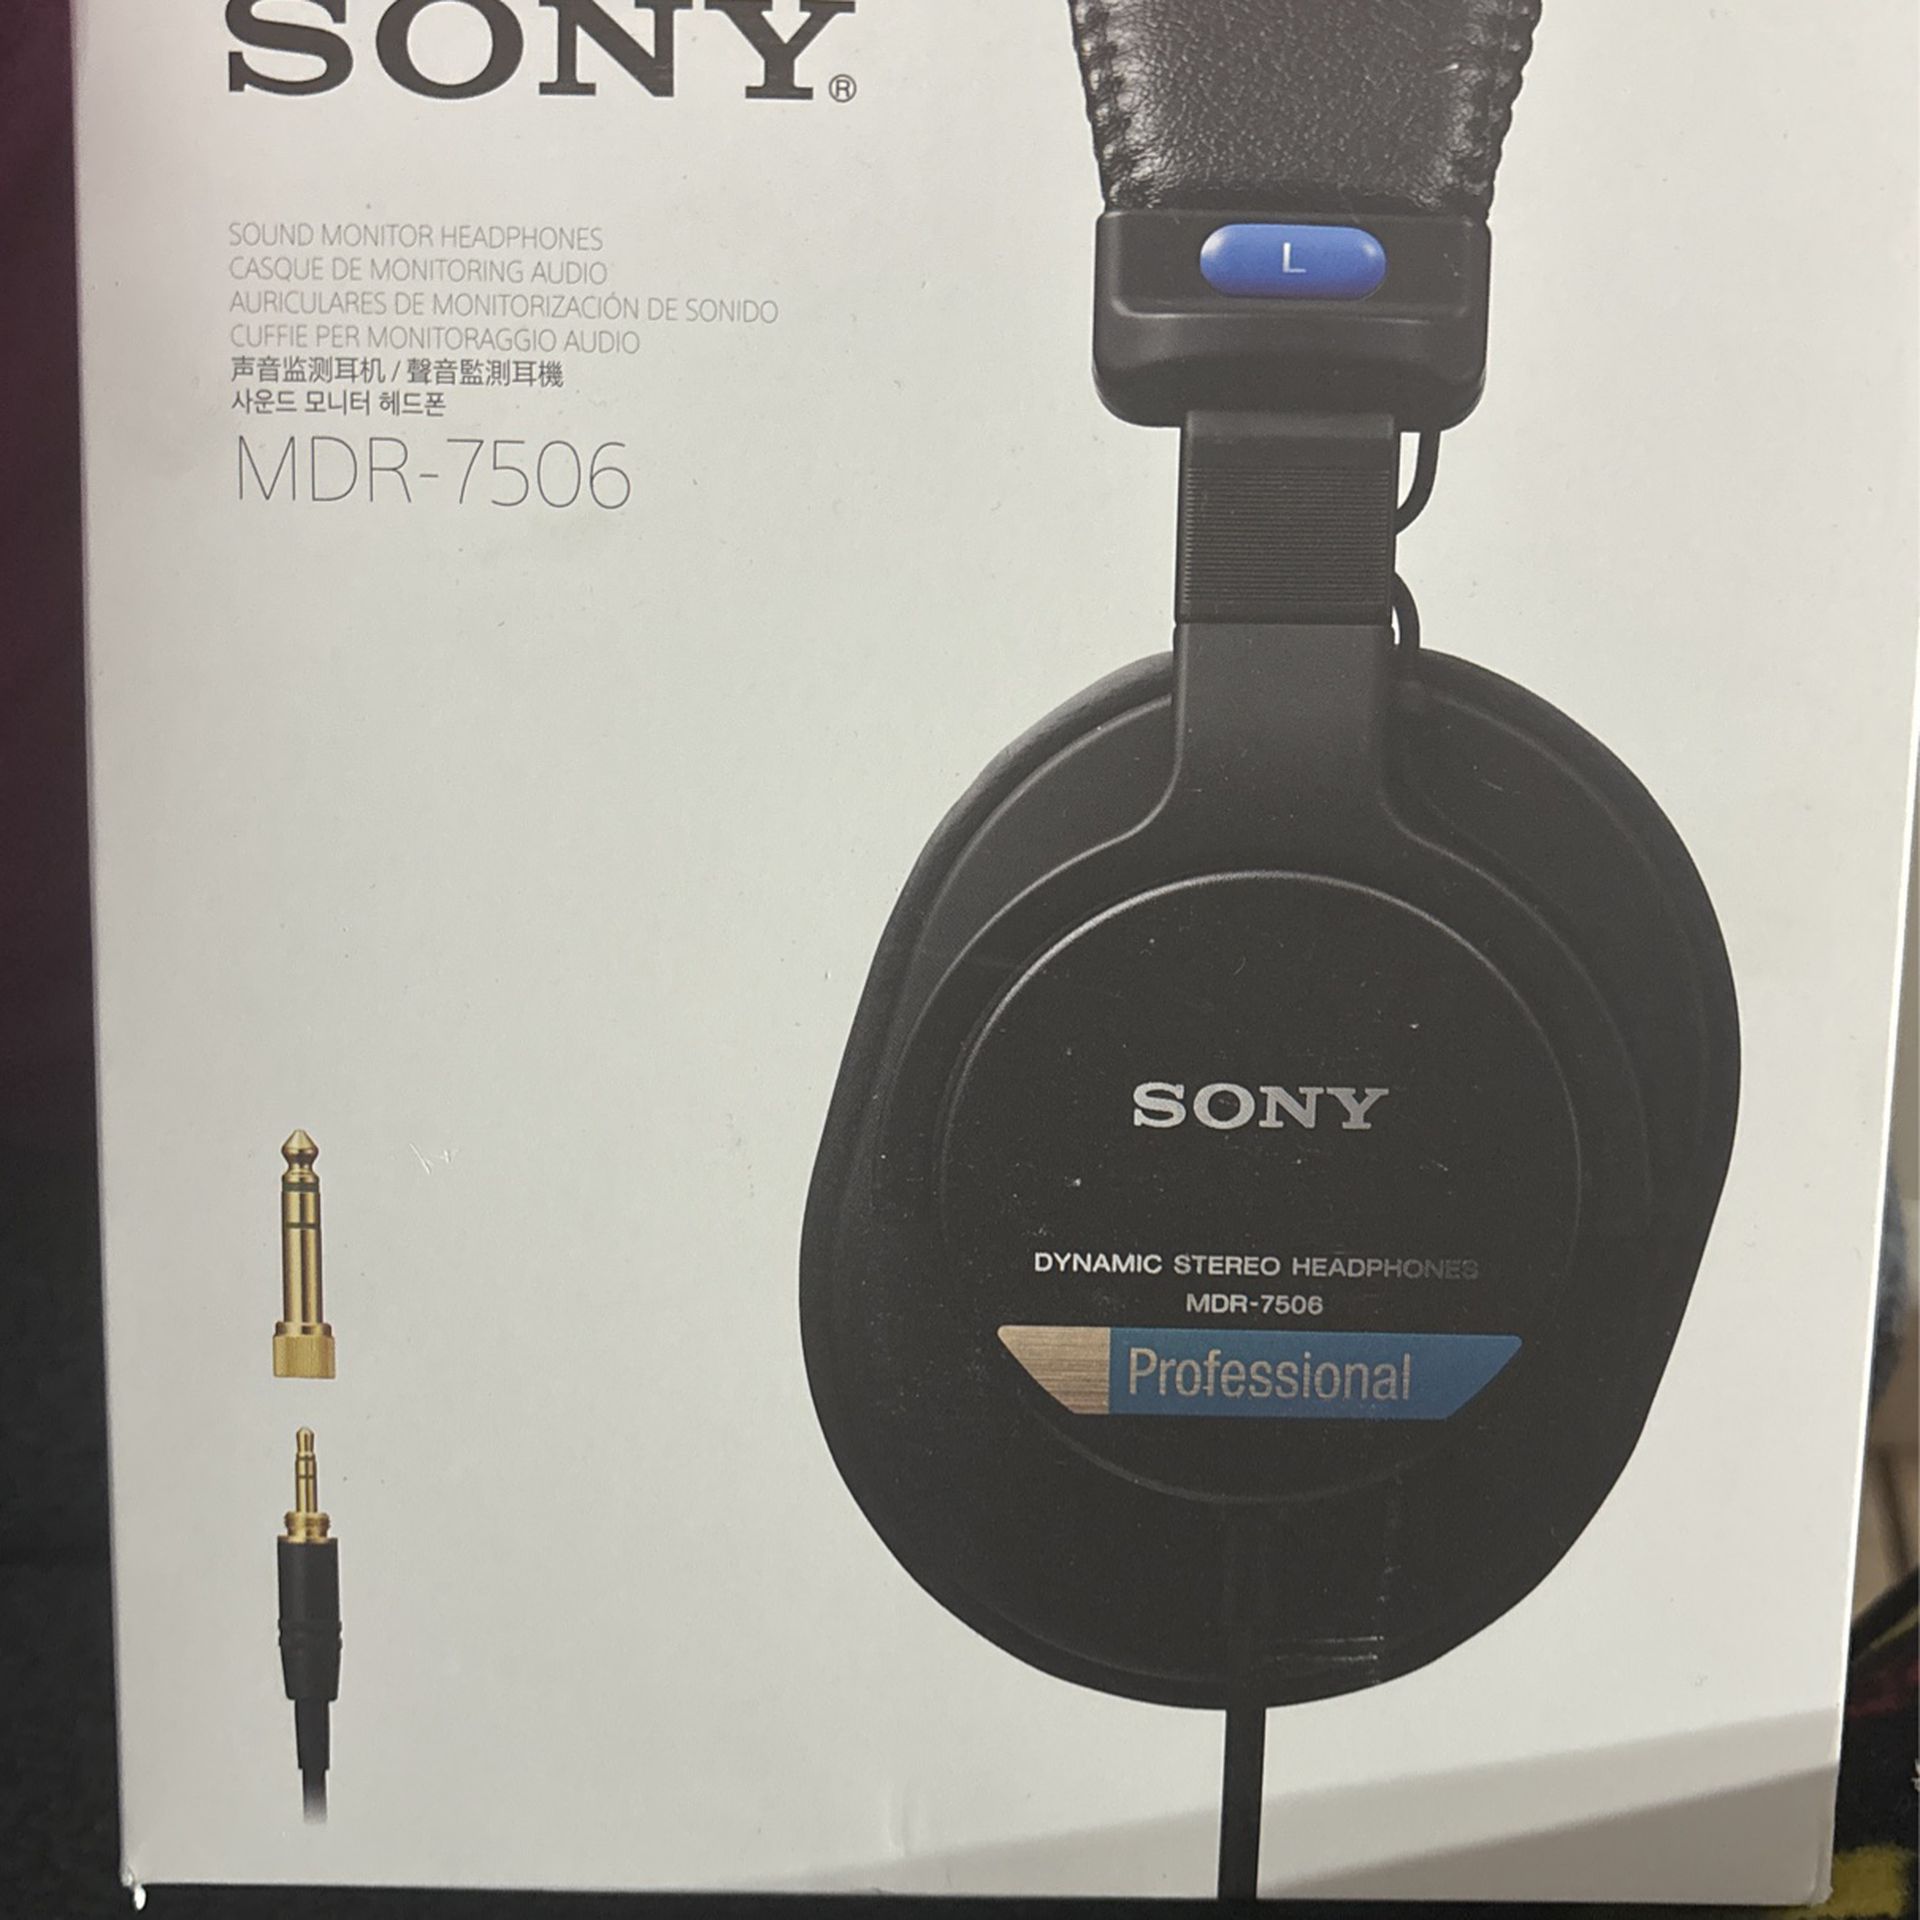 Sony Sound Monitor Headphones 